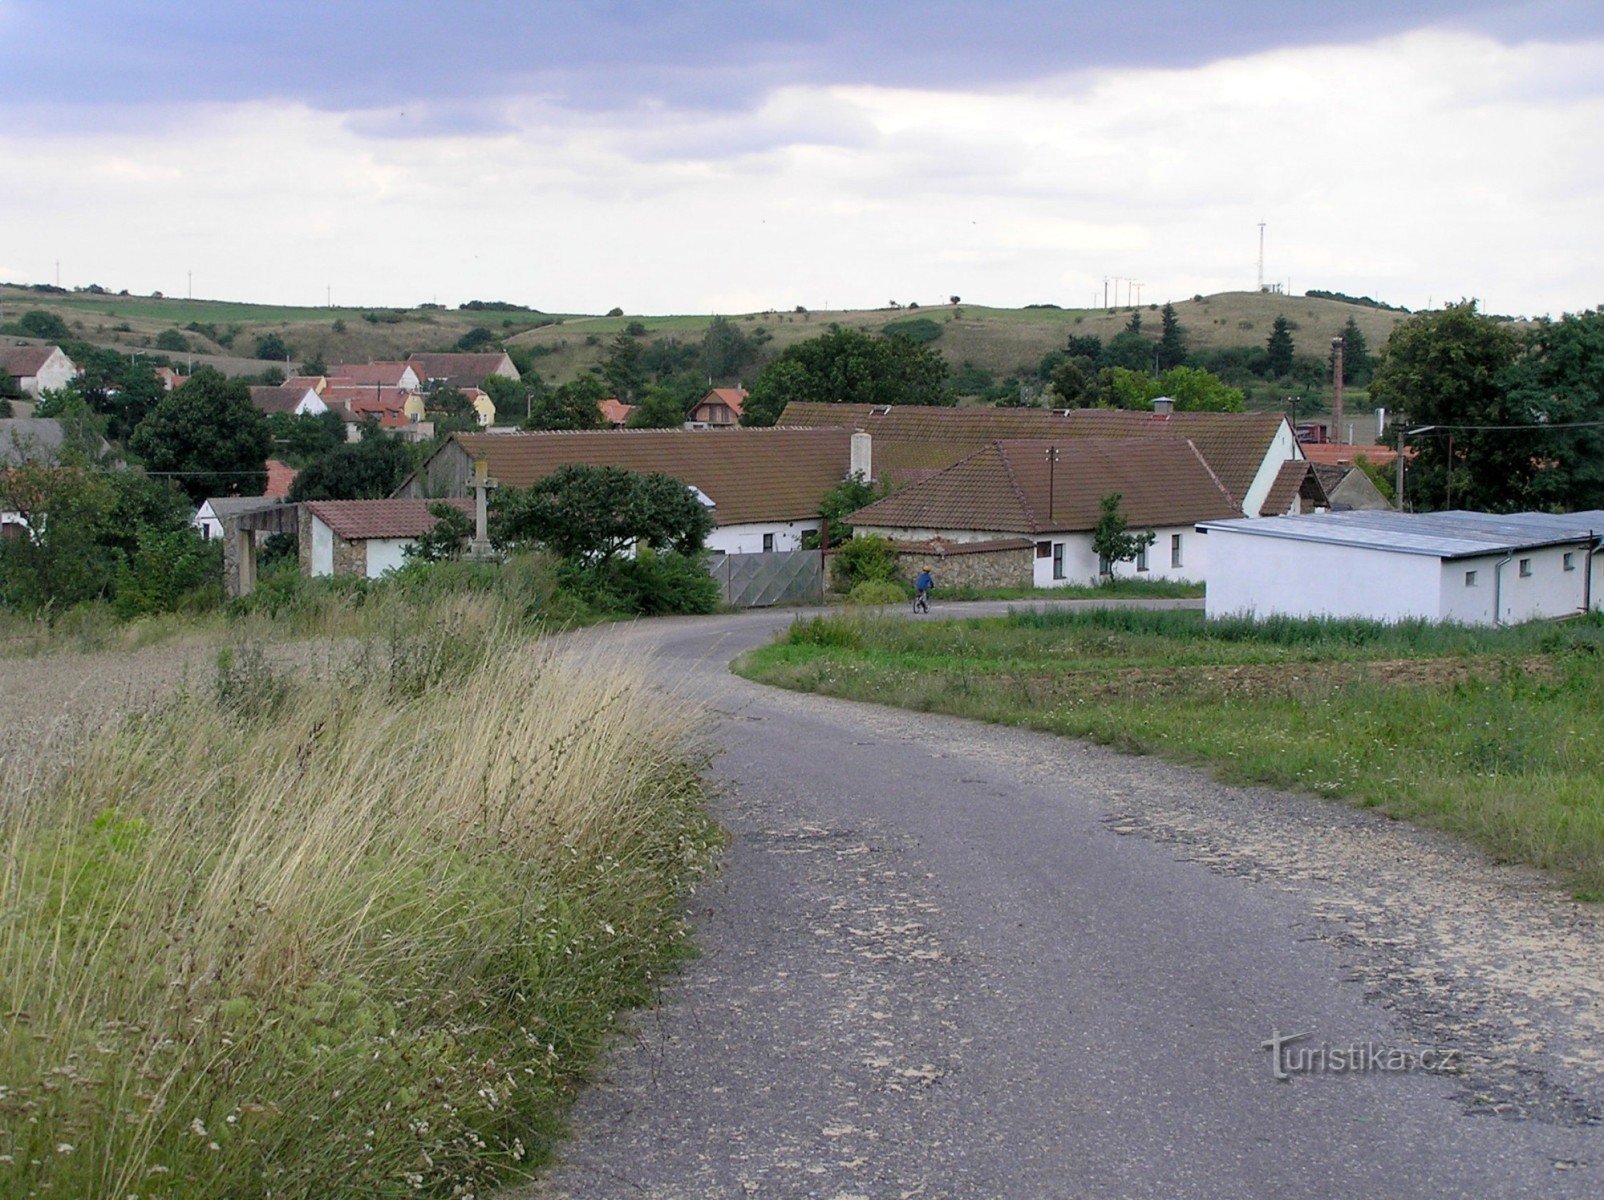 Střelice (2006. augusztus) - érkezés nyugat felől